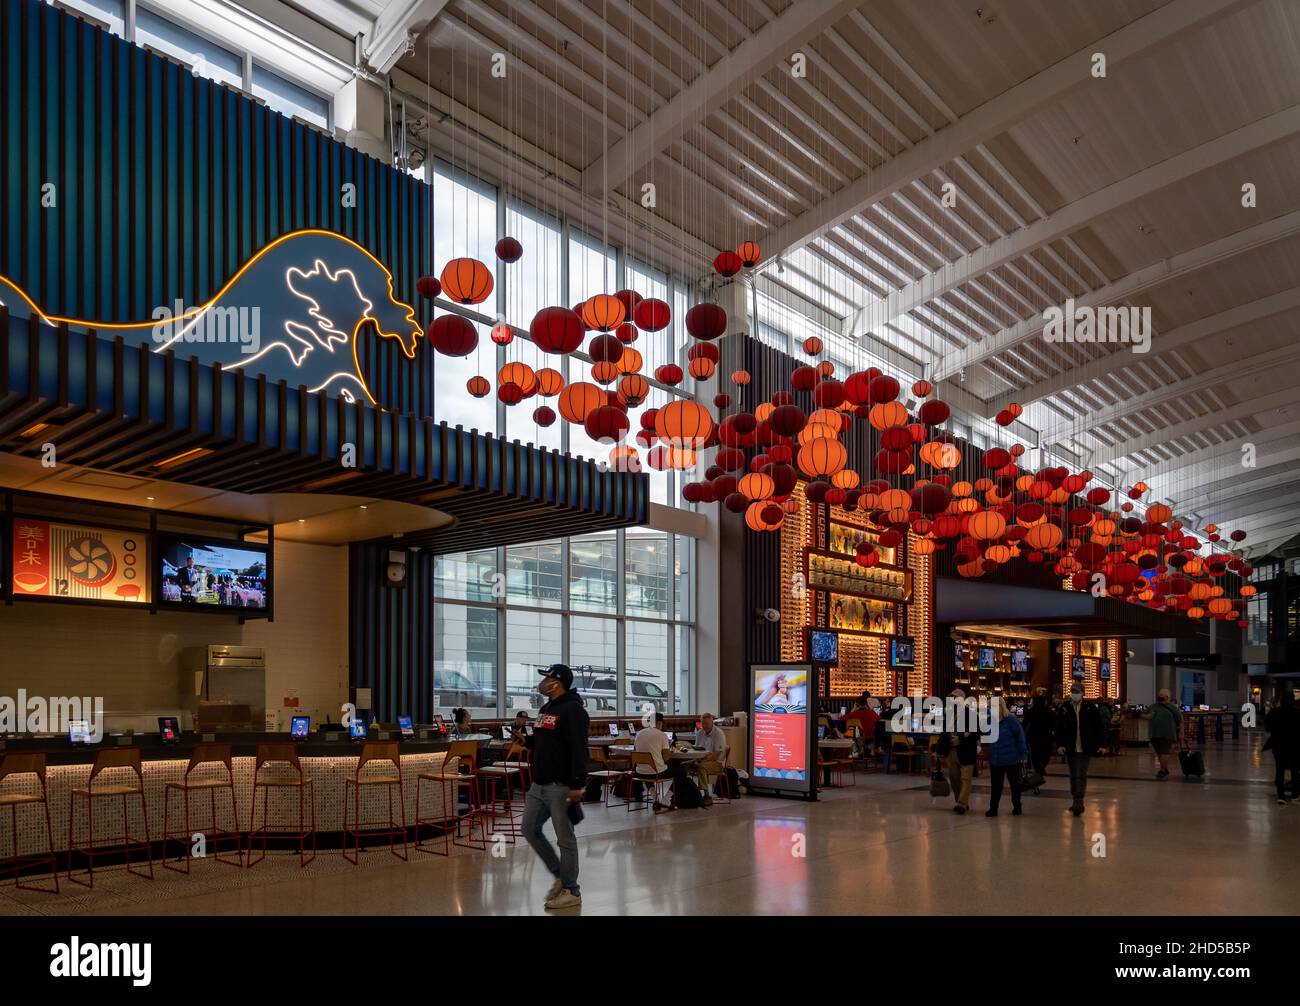 Les lanternes rouges décorent un restaurant japonais à l'intérieur du terminal.Aéroport international George Bush.Houston, Texas, États-Unis. Banque D'Images